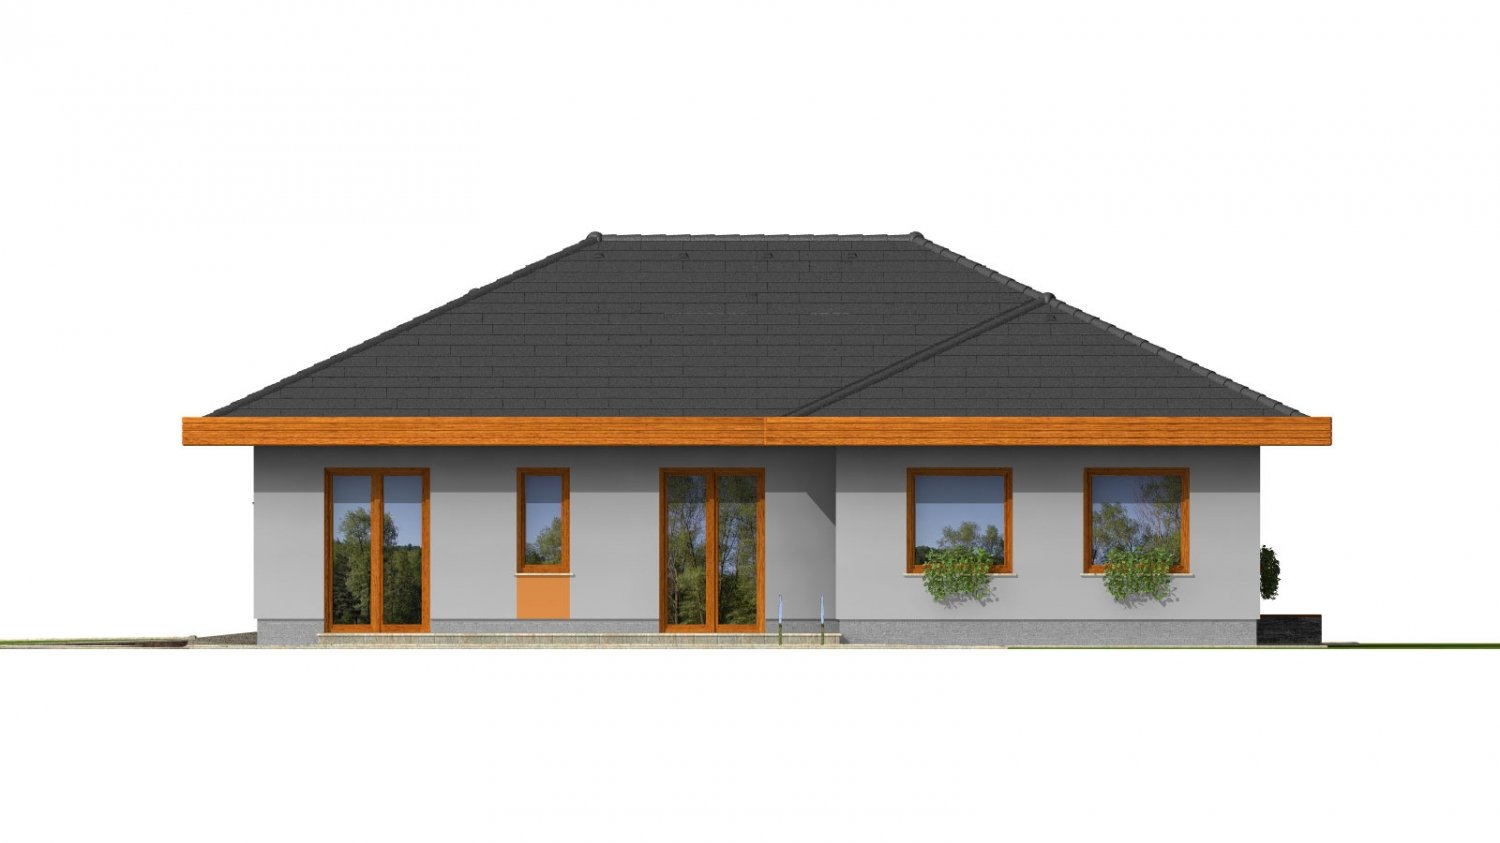 Zrkadlový pohľad 3. - Dům do L s dvojgaráží a valbovou střechou. Možnost realizovat plochou střechu.